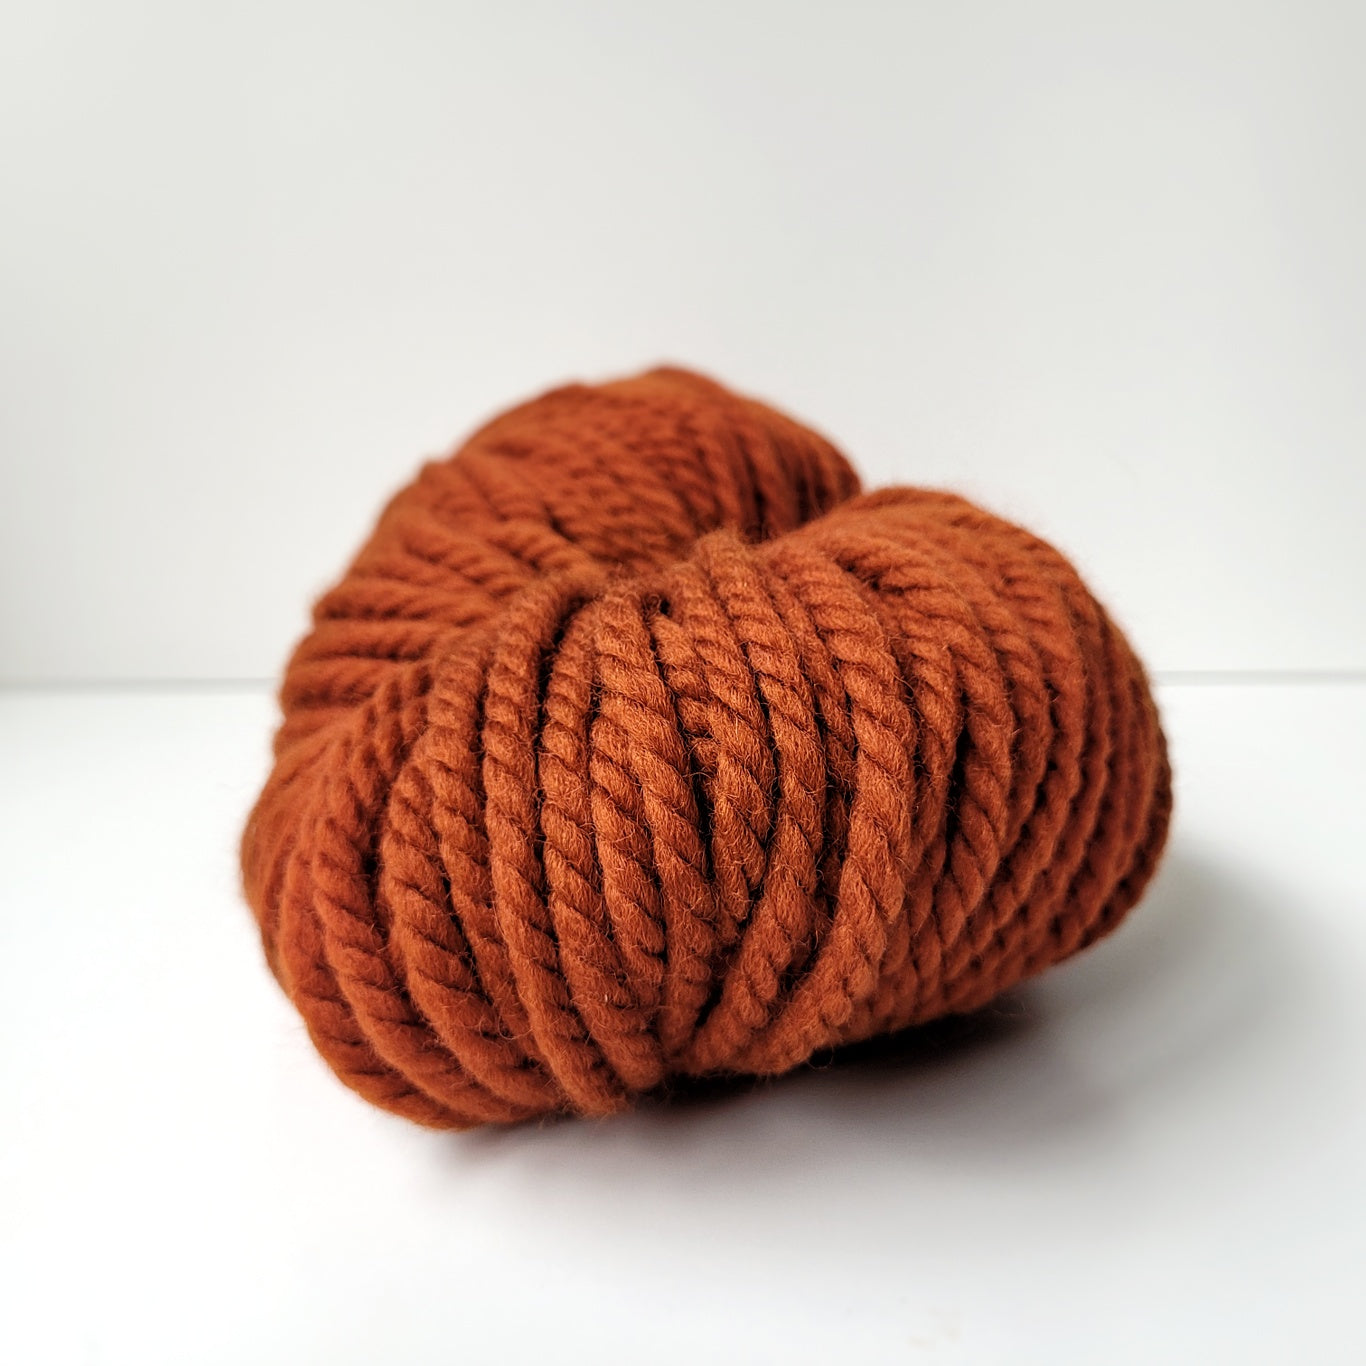 Super Woolly – Woolly Yarn Co